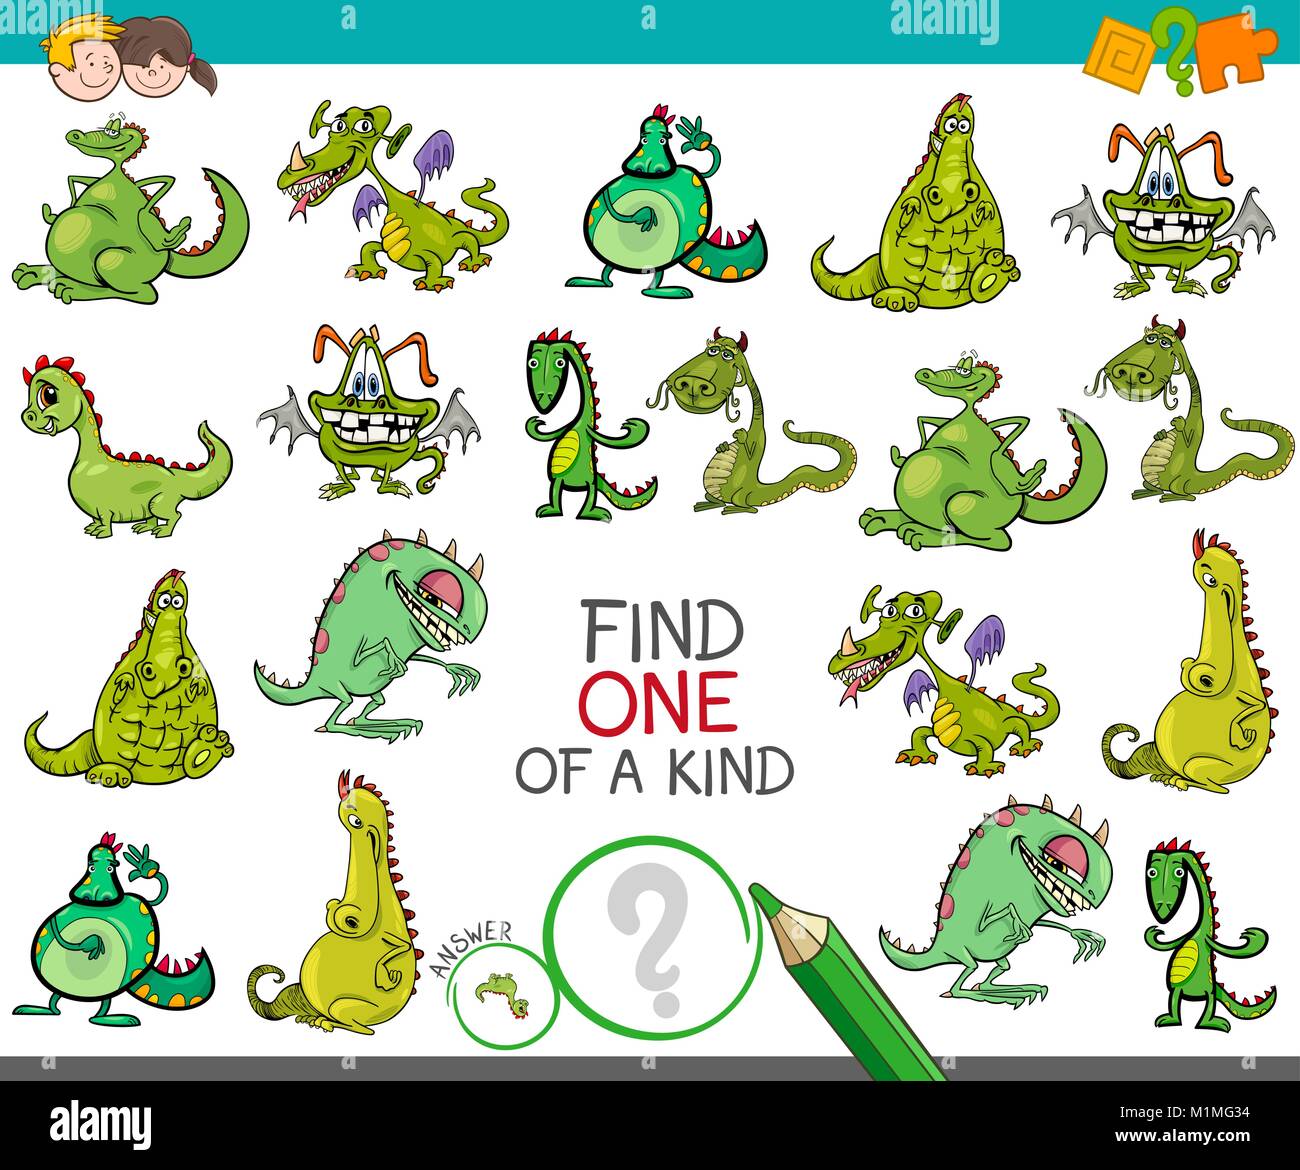 Cartoon illustrazione di trovare un tipo di immagine attività didattica gioco per bambini con draghi Fantasy caratteri di origine animale Illustrazione Vettoriale